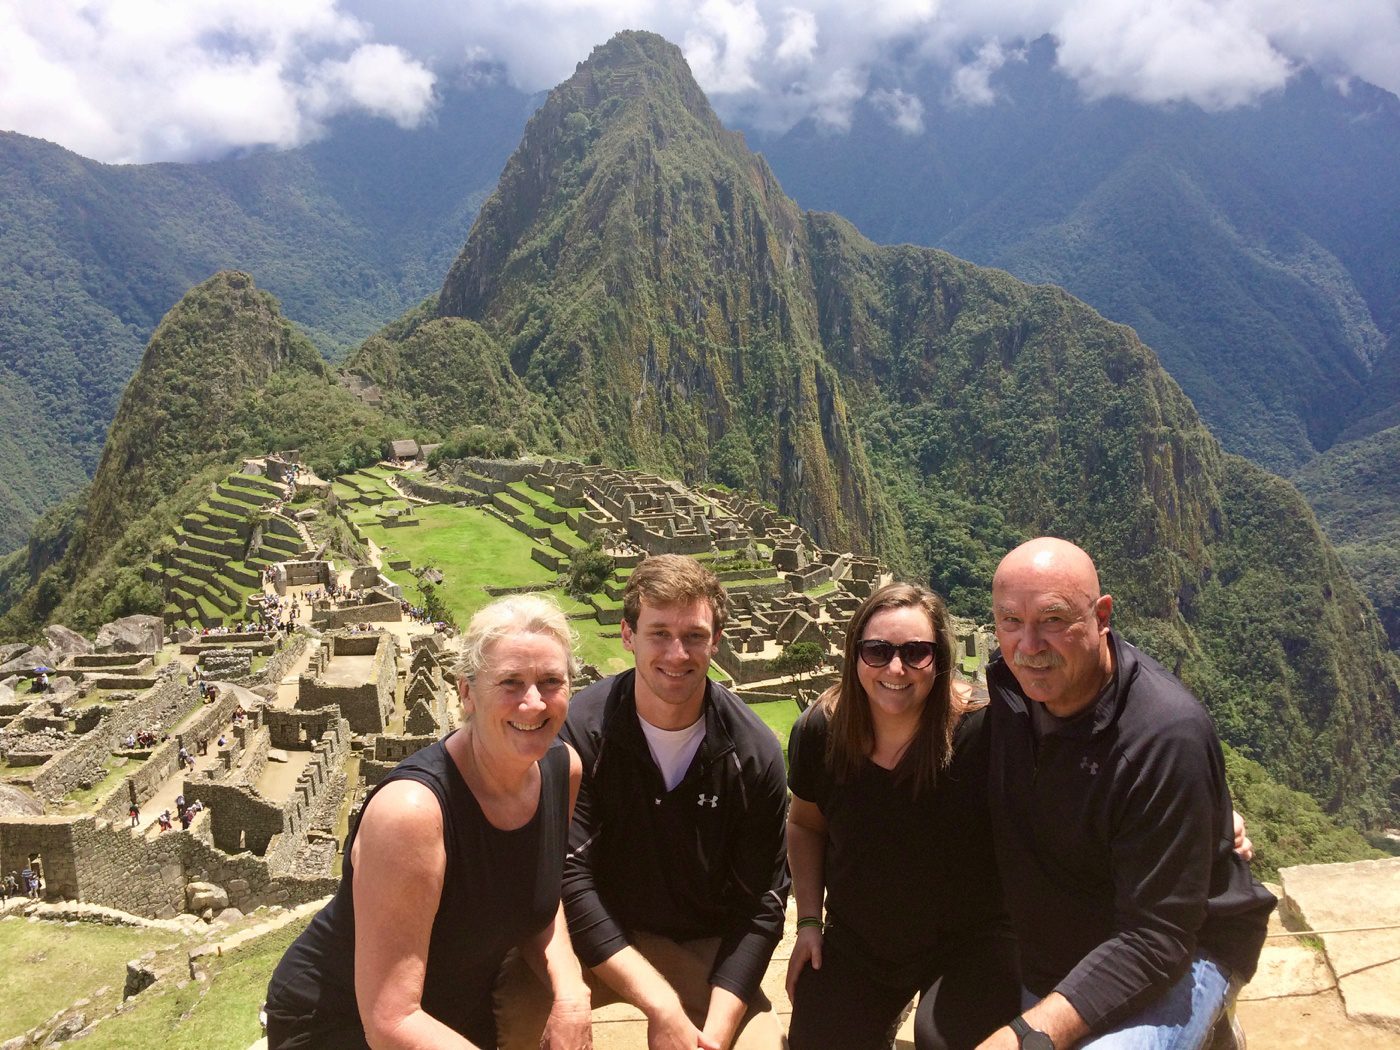 Global travel expert Peggy at Machu Picchu in Peru.